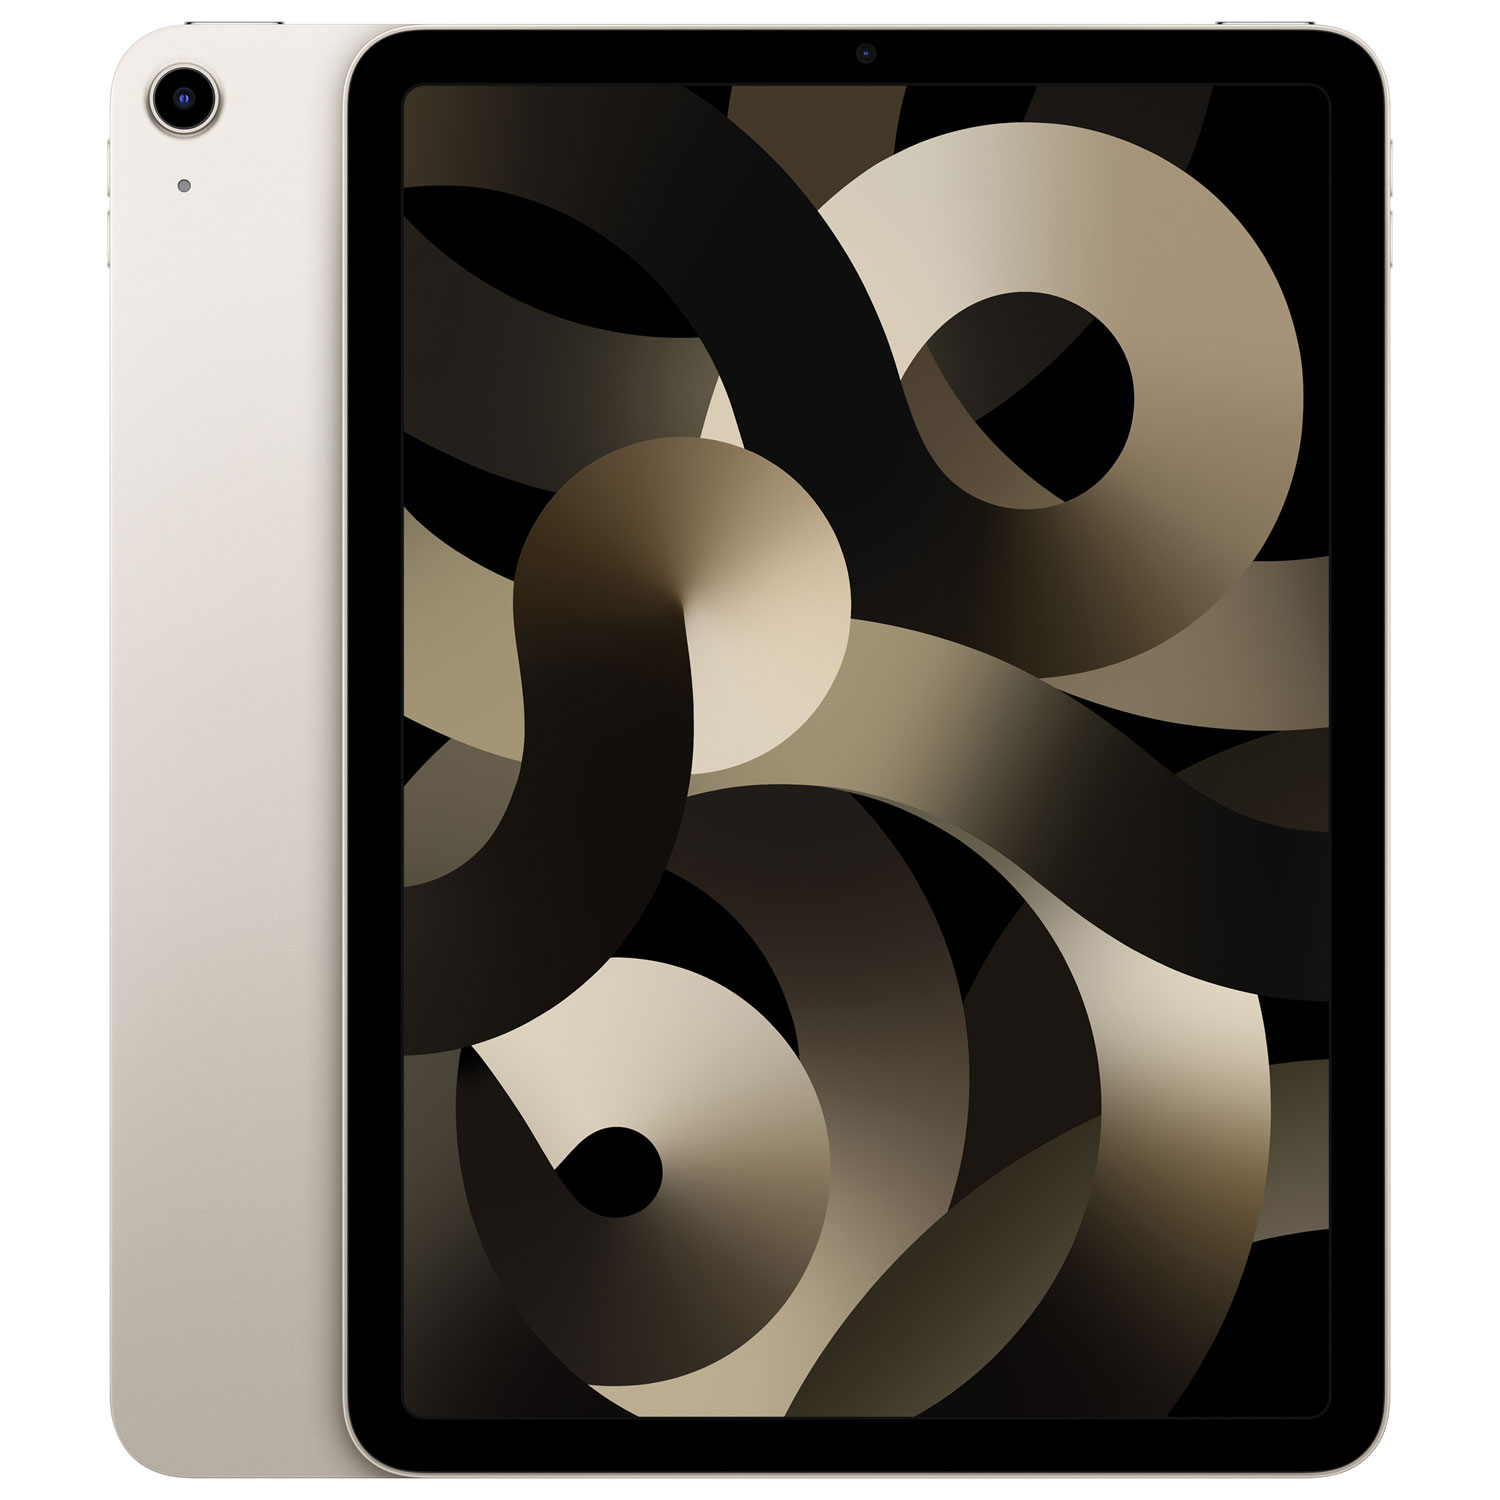 Apple iPad Air 10.9" 256GB with Wi-Fi (5th Generation) - Starlight